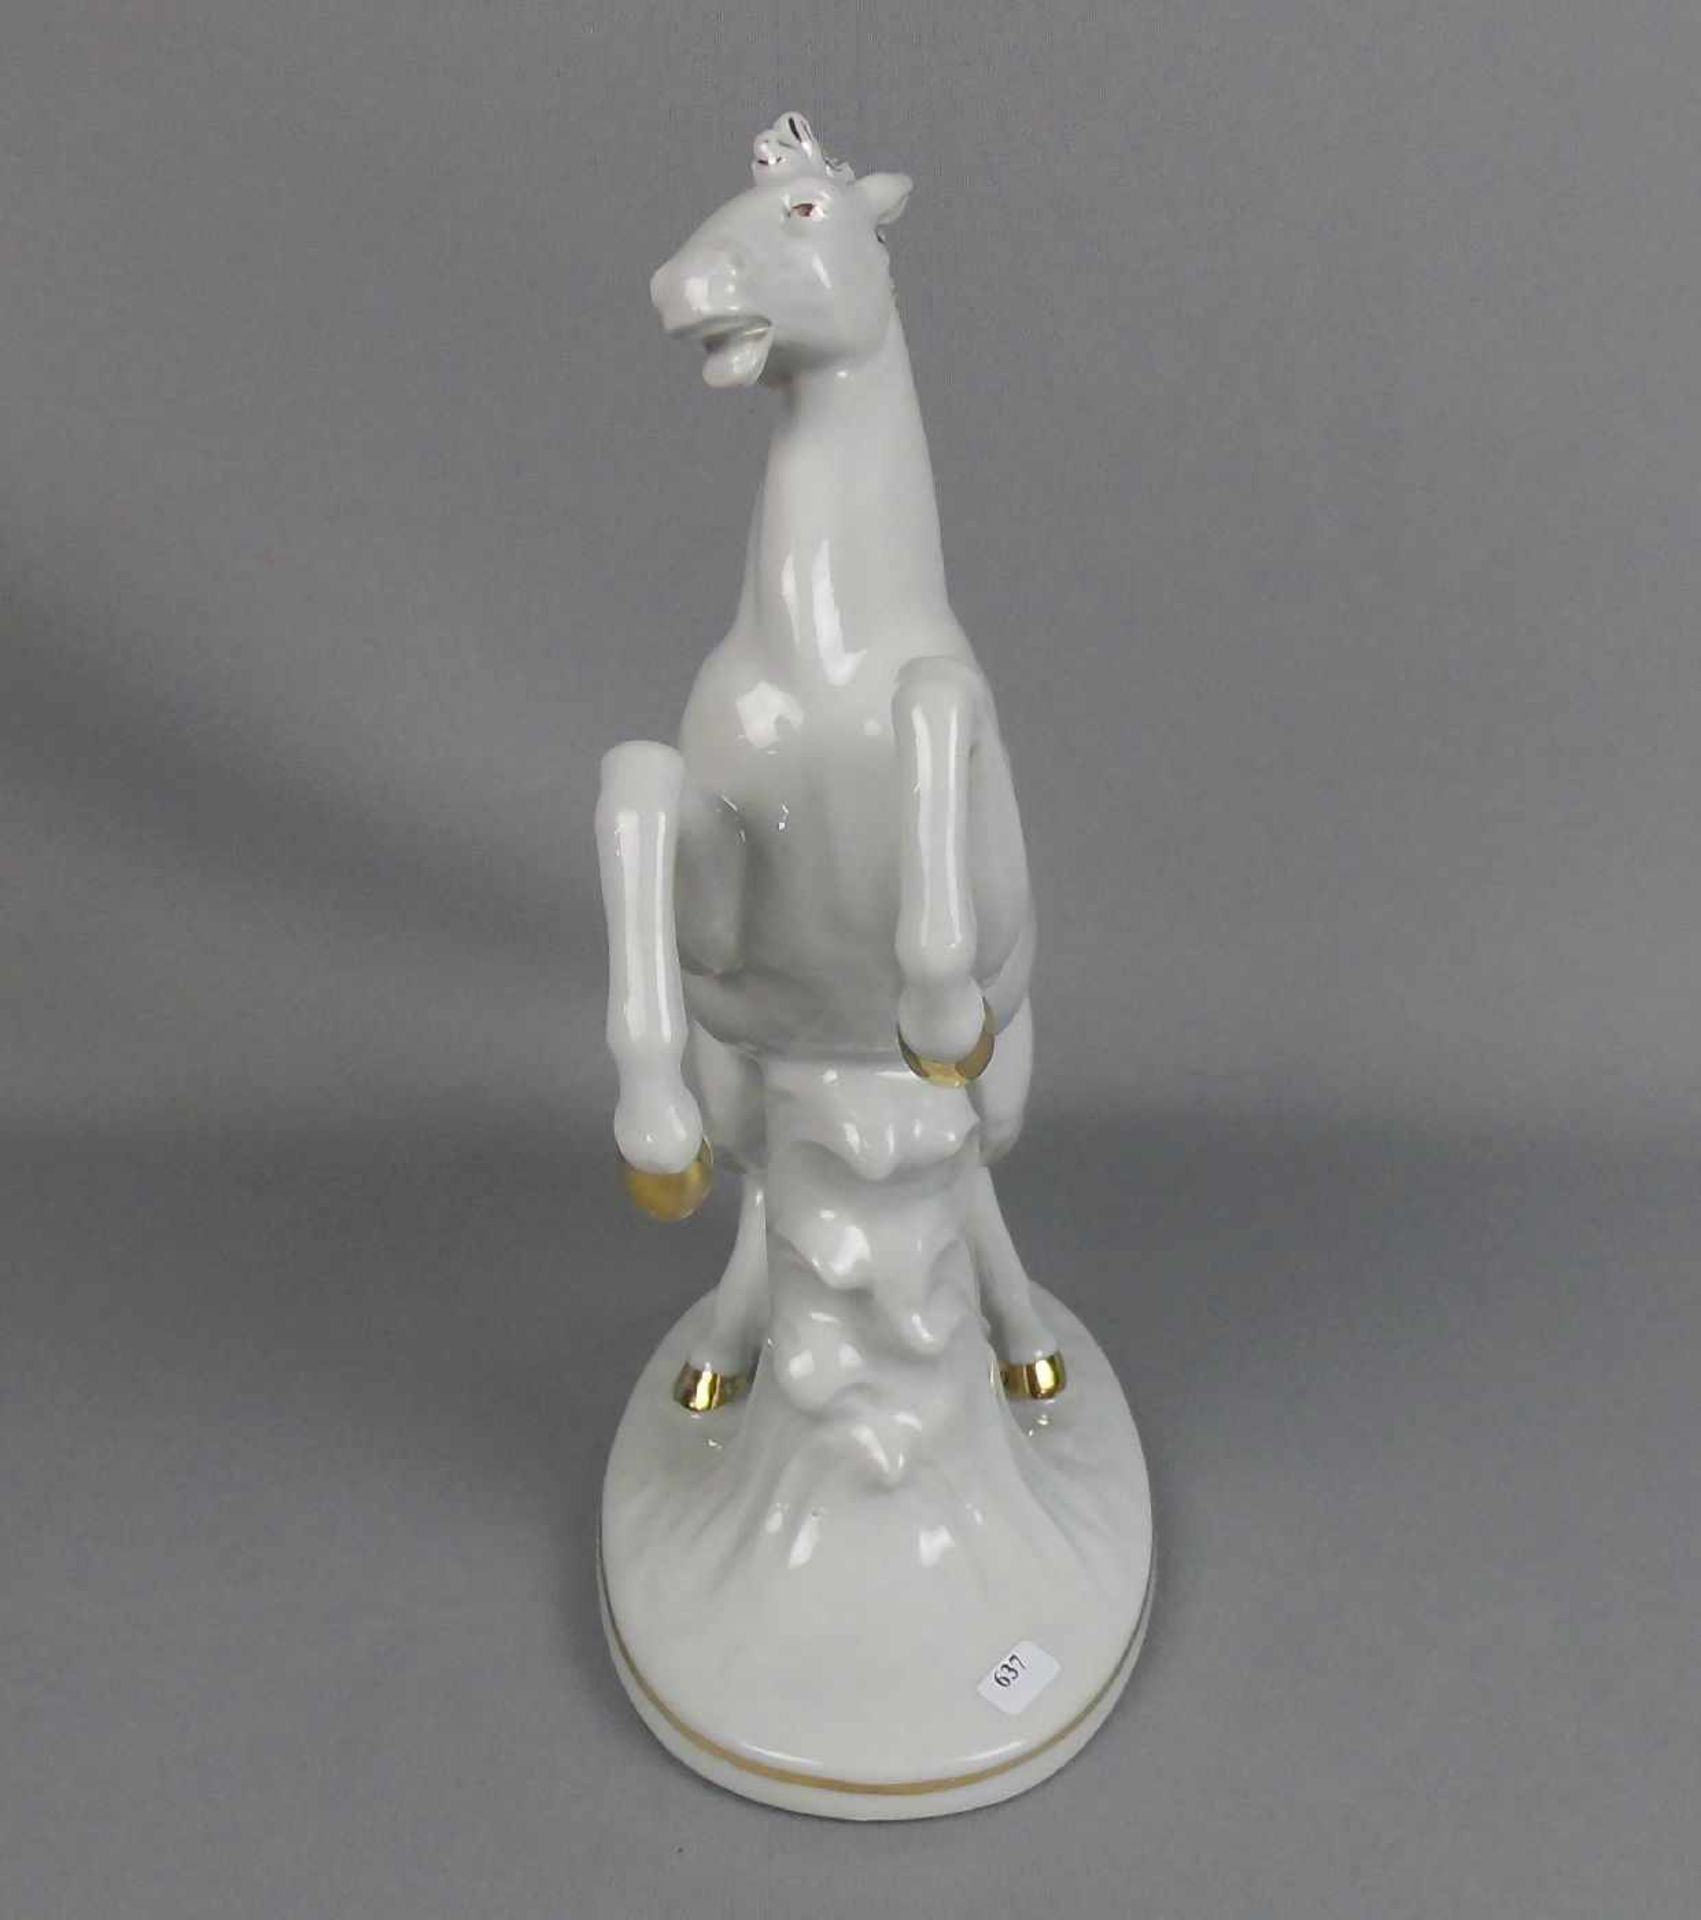 PORZELLANFIGUR "Aufsteigendes Pferd", vertieft gemarkt WKC, Porzellanmanufaktur Weiss / Kühnert & Co - Bild 2 aus 4